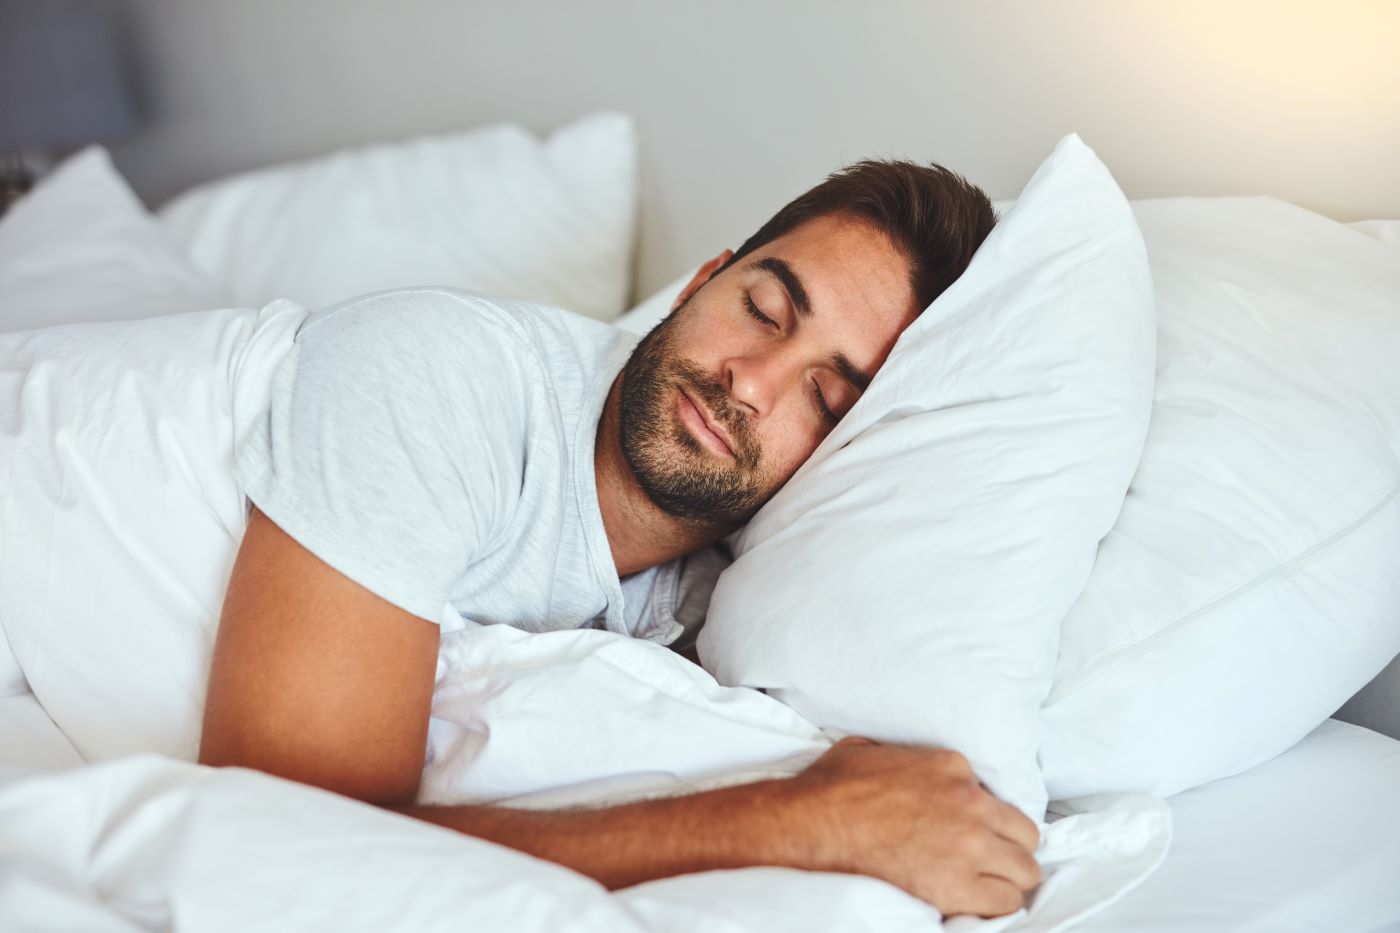 Somnul și odihna, impact major asupra calităţii vieţii (studiu)